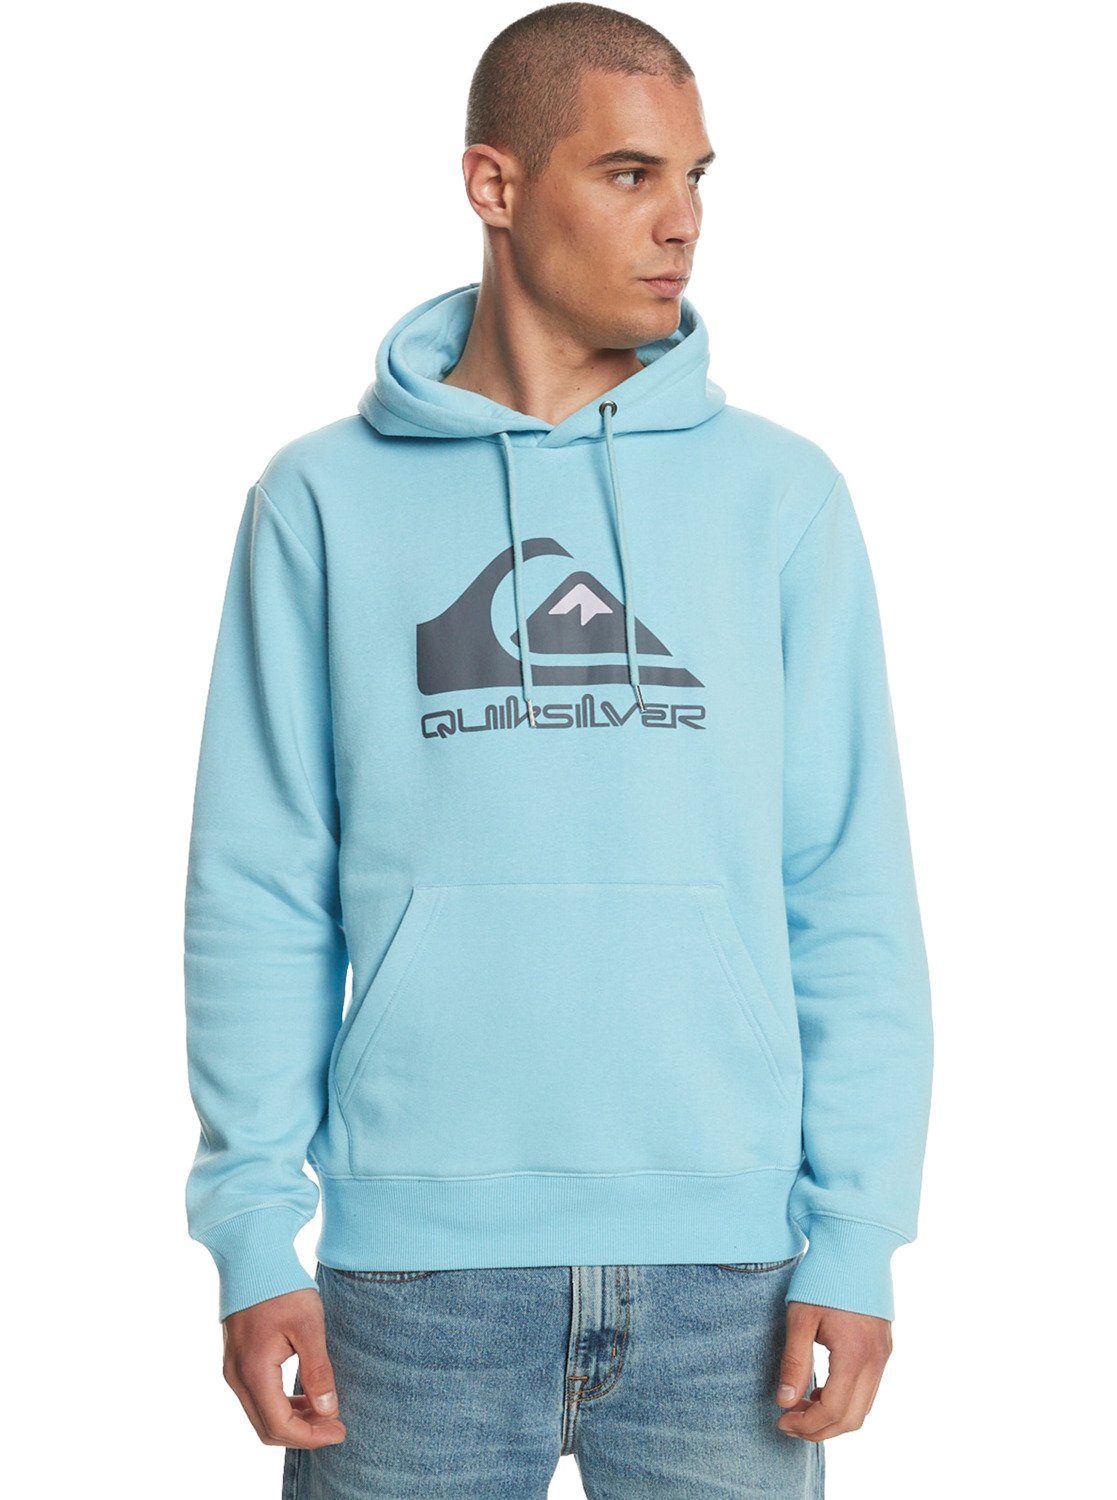 Quiksilver Sweatshirt Big Logo Sky Blue